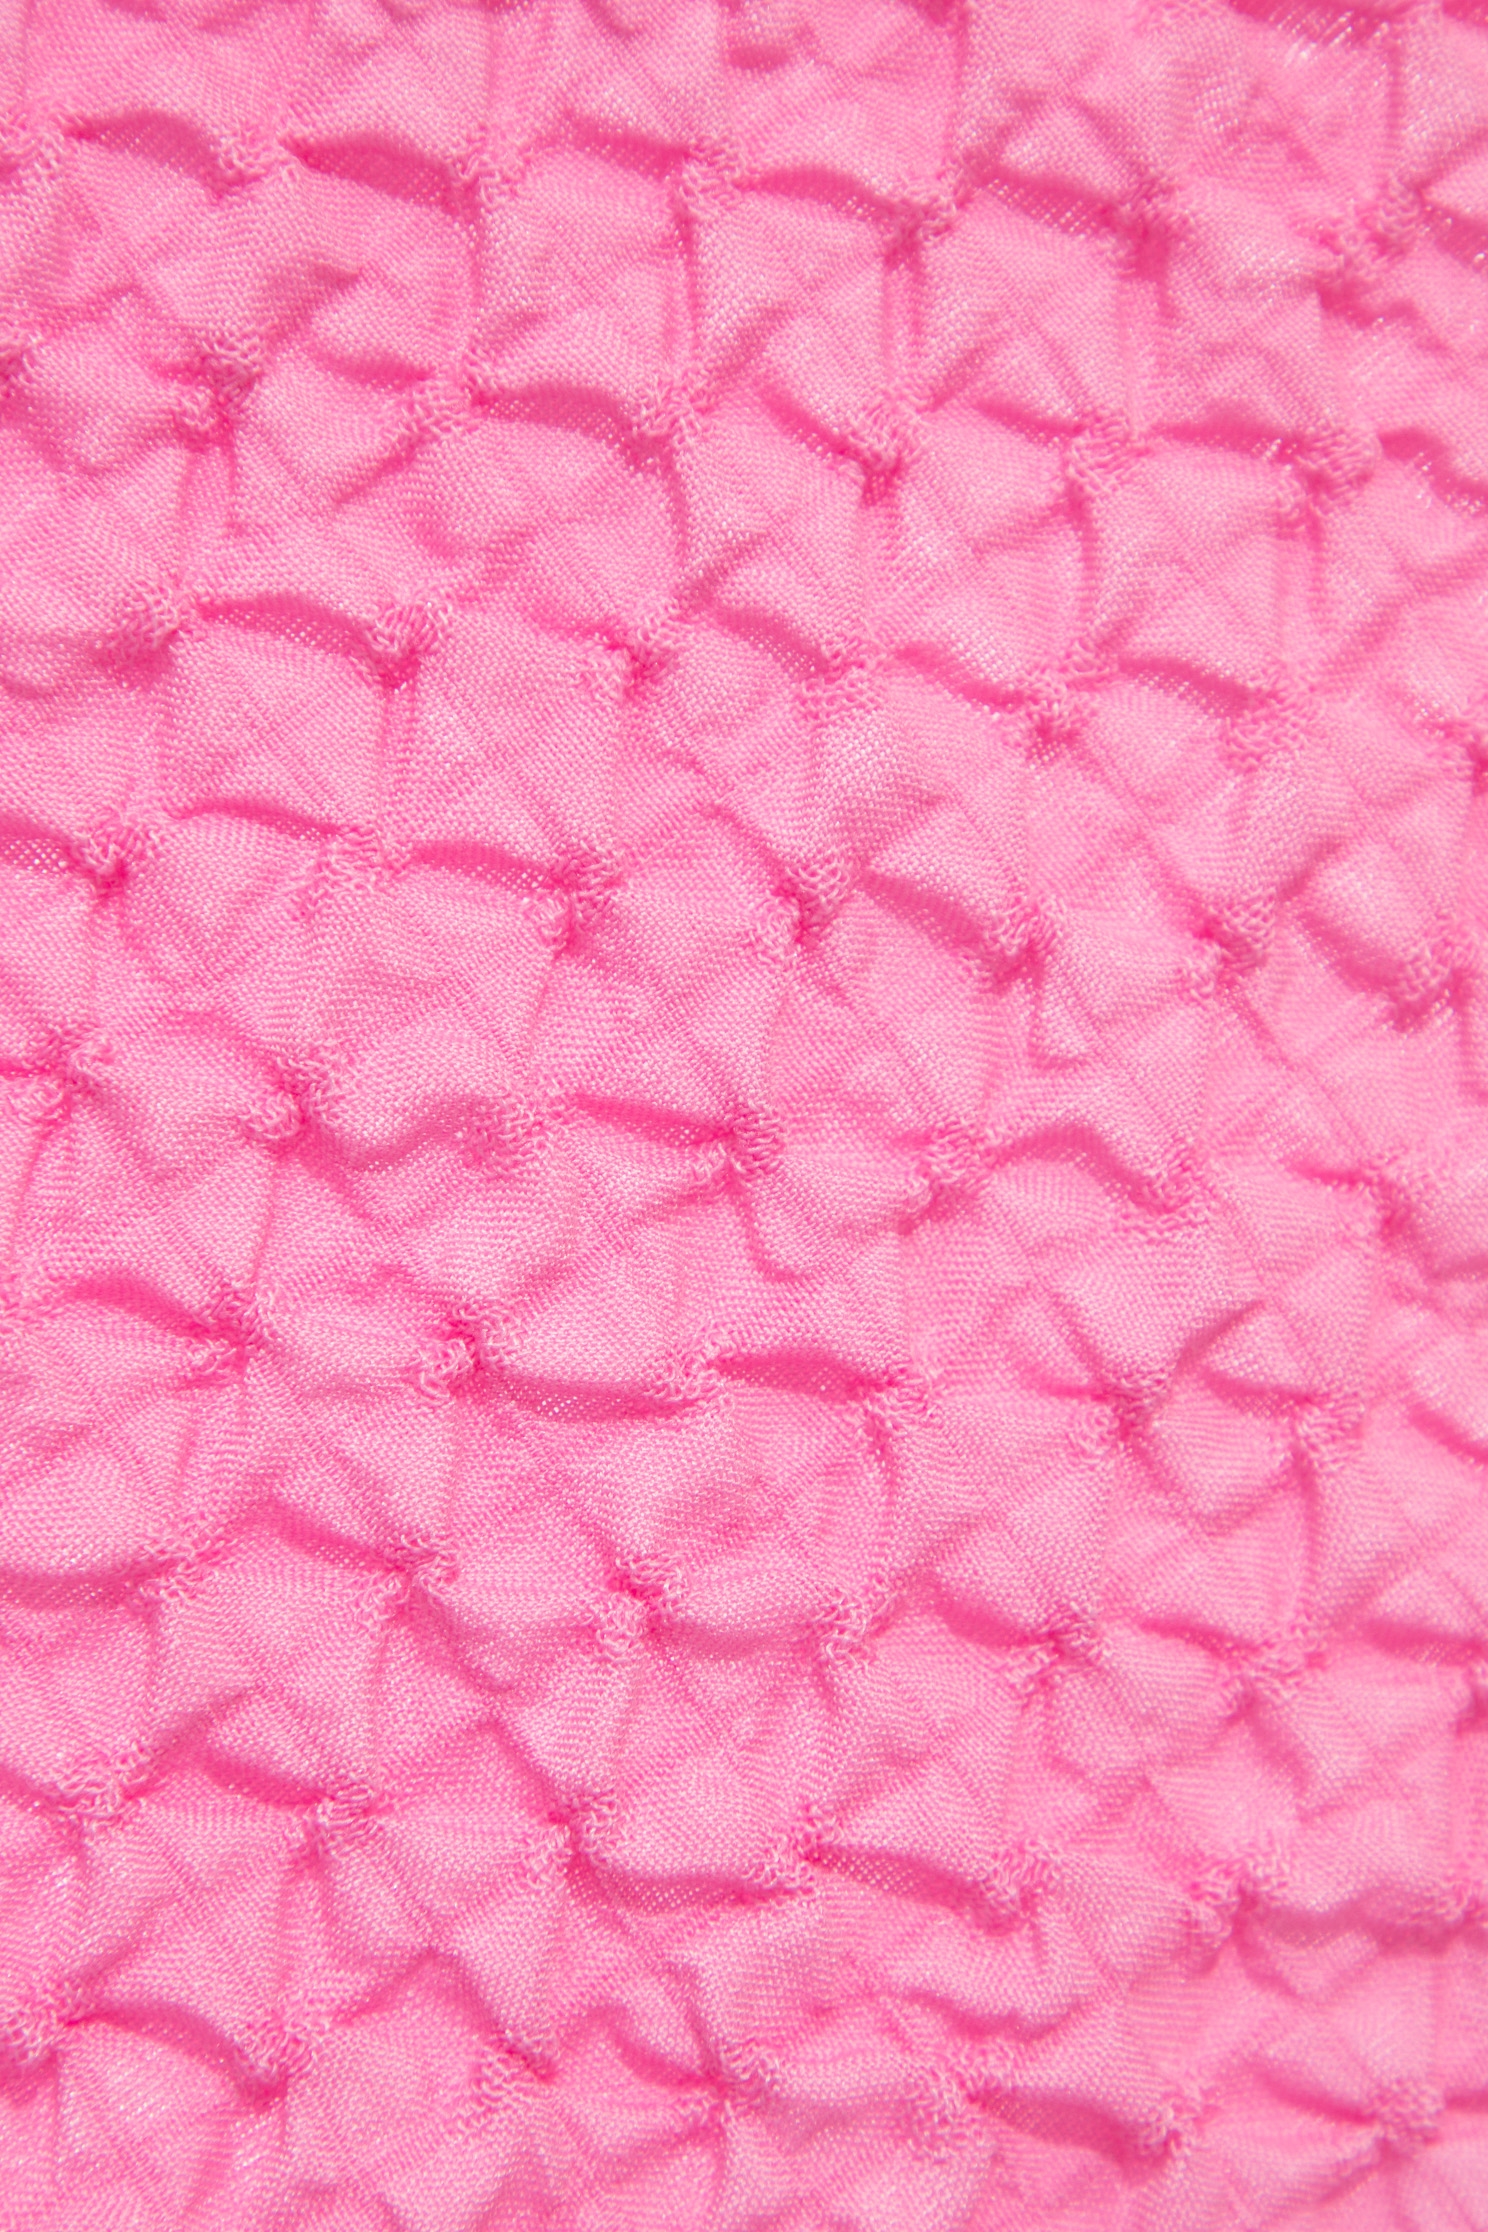 閃粉色立體壓紋上衣閃粉色立體壓紋上衣,上衣,春夏穿搭,時髦選品專區,荷葉